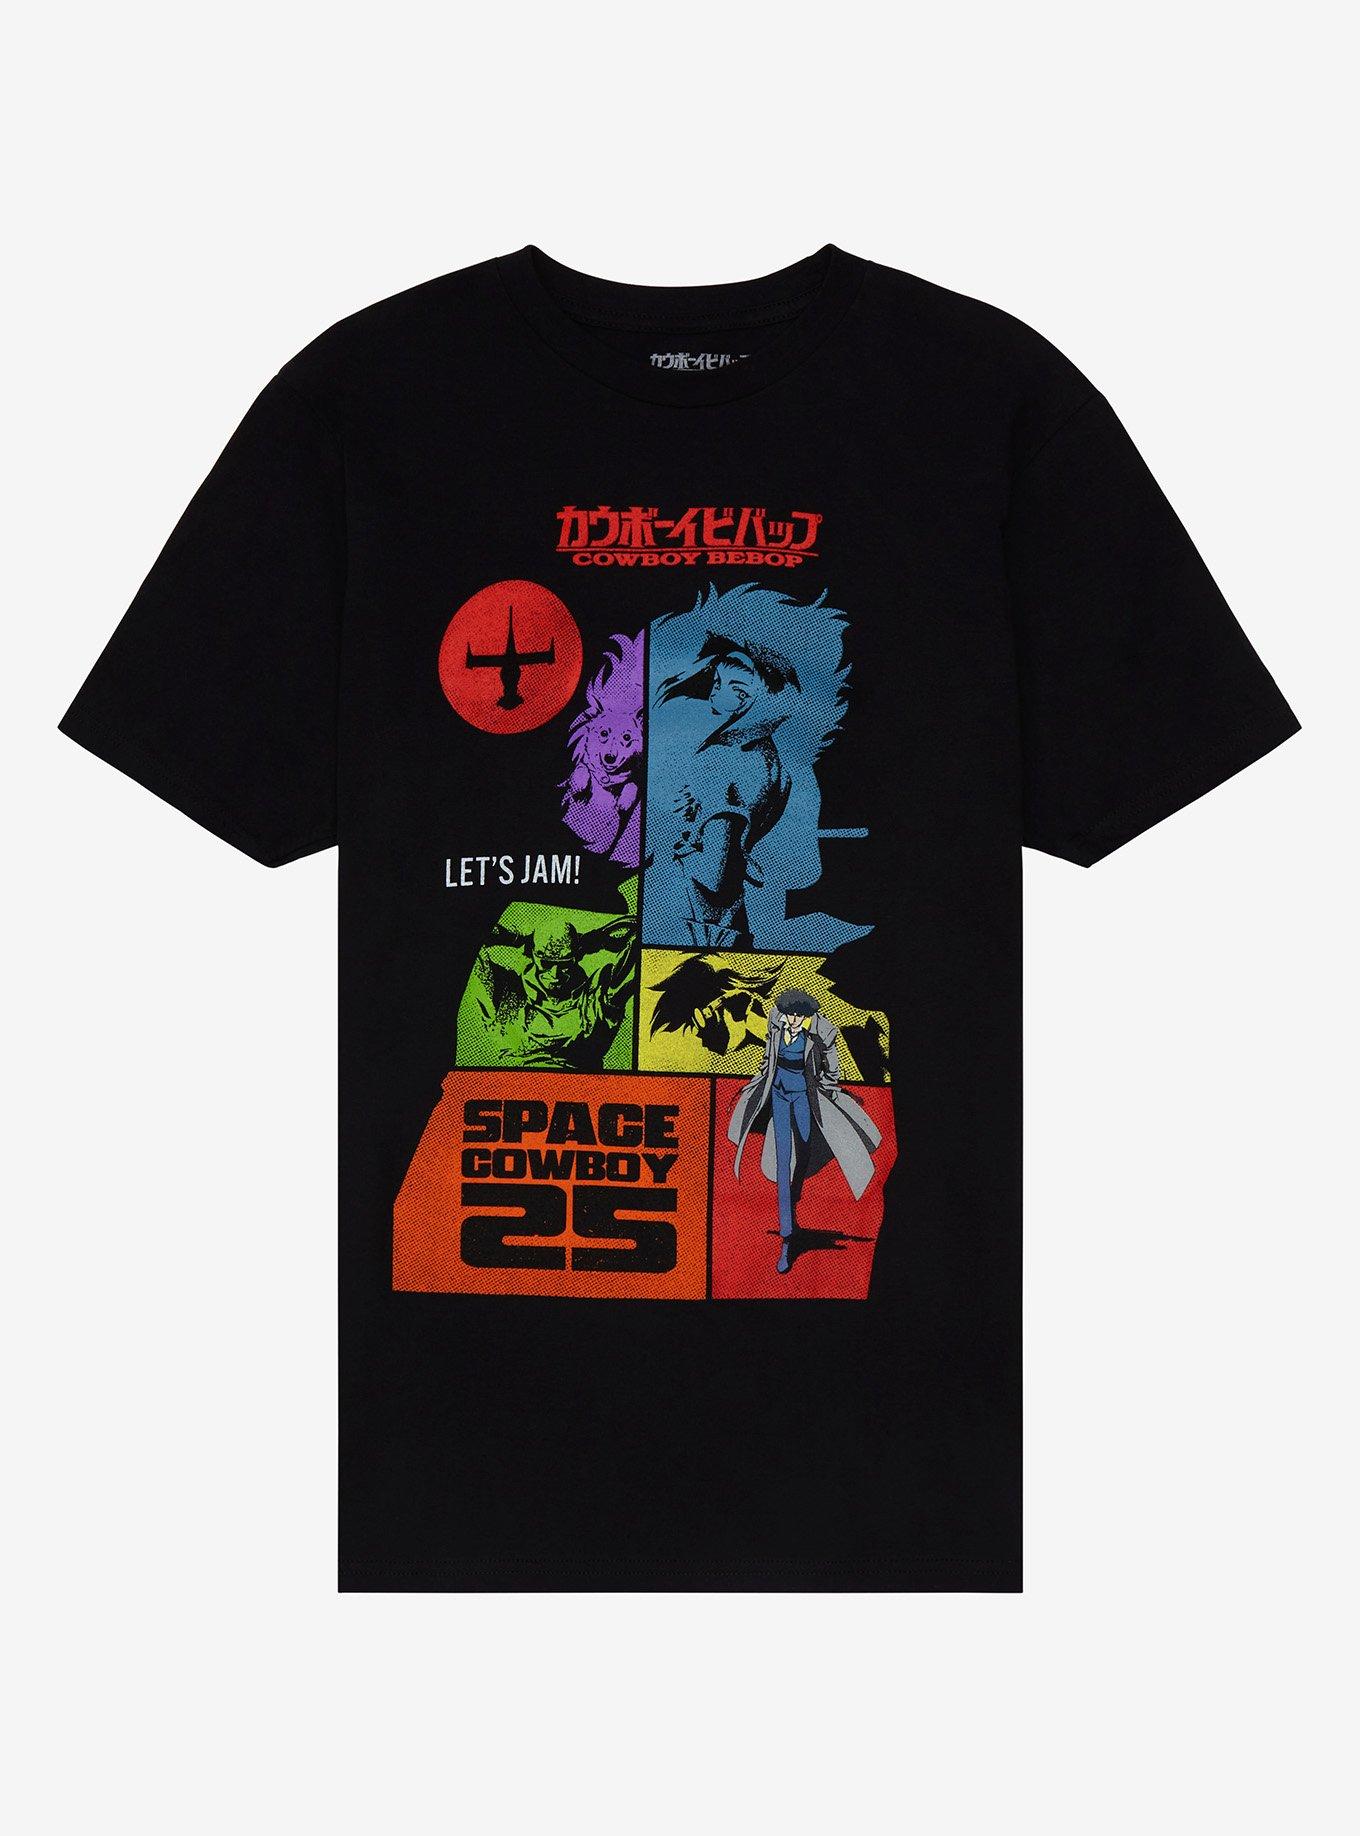 Cowboy Bebop 25th Anniversary Tonal T-Shirt, BLACK, hi-res